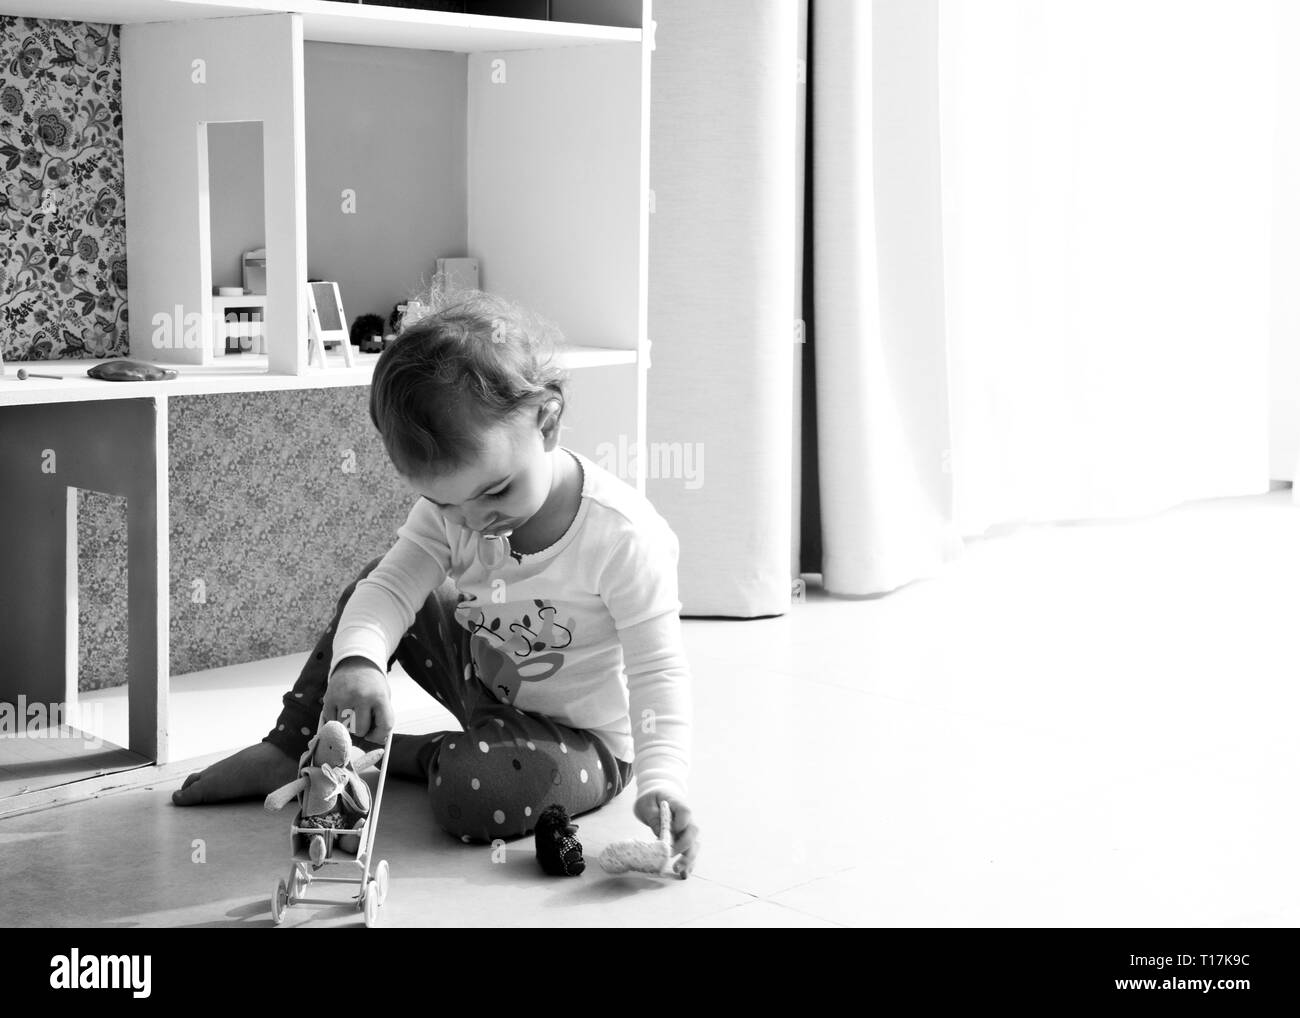 image rétro-éclairée d'un enfant qui joue avec une maison de poupée et des jouets animaux en peluche, assis sur un sol carrelé, seul à la maison avec une sucette dans la bouche. Banque D'Images